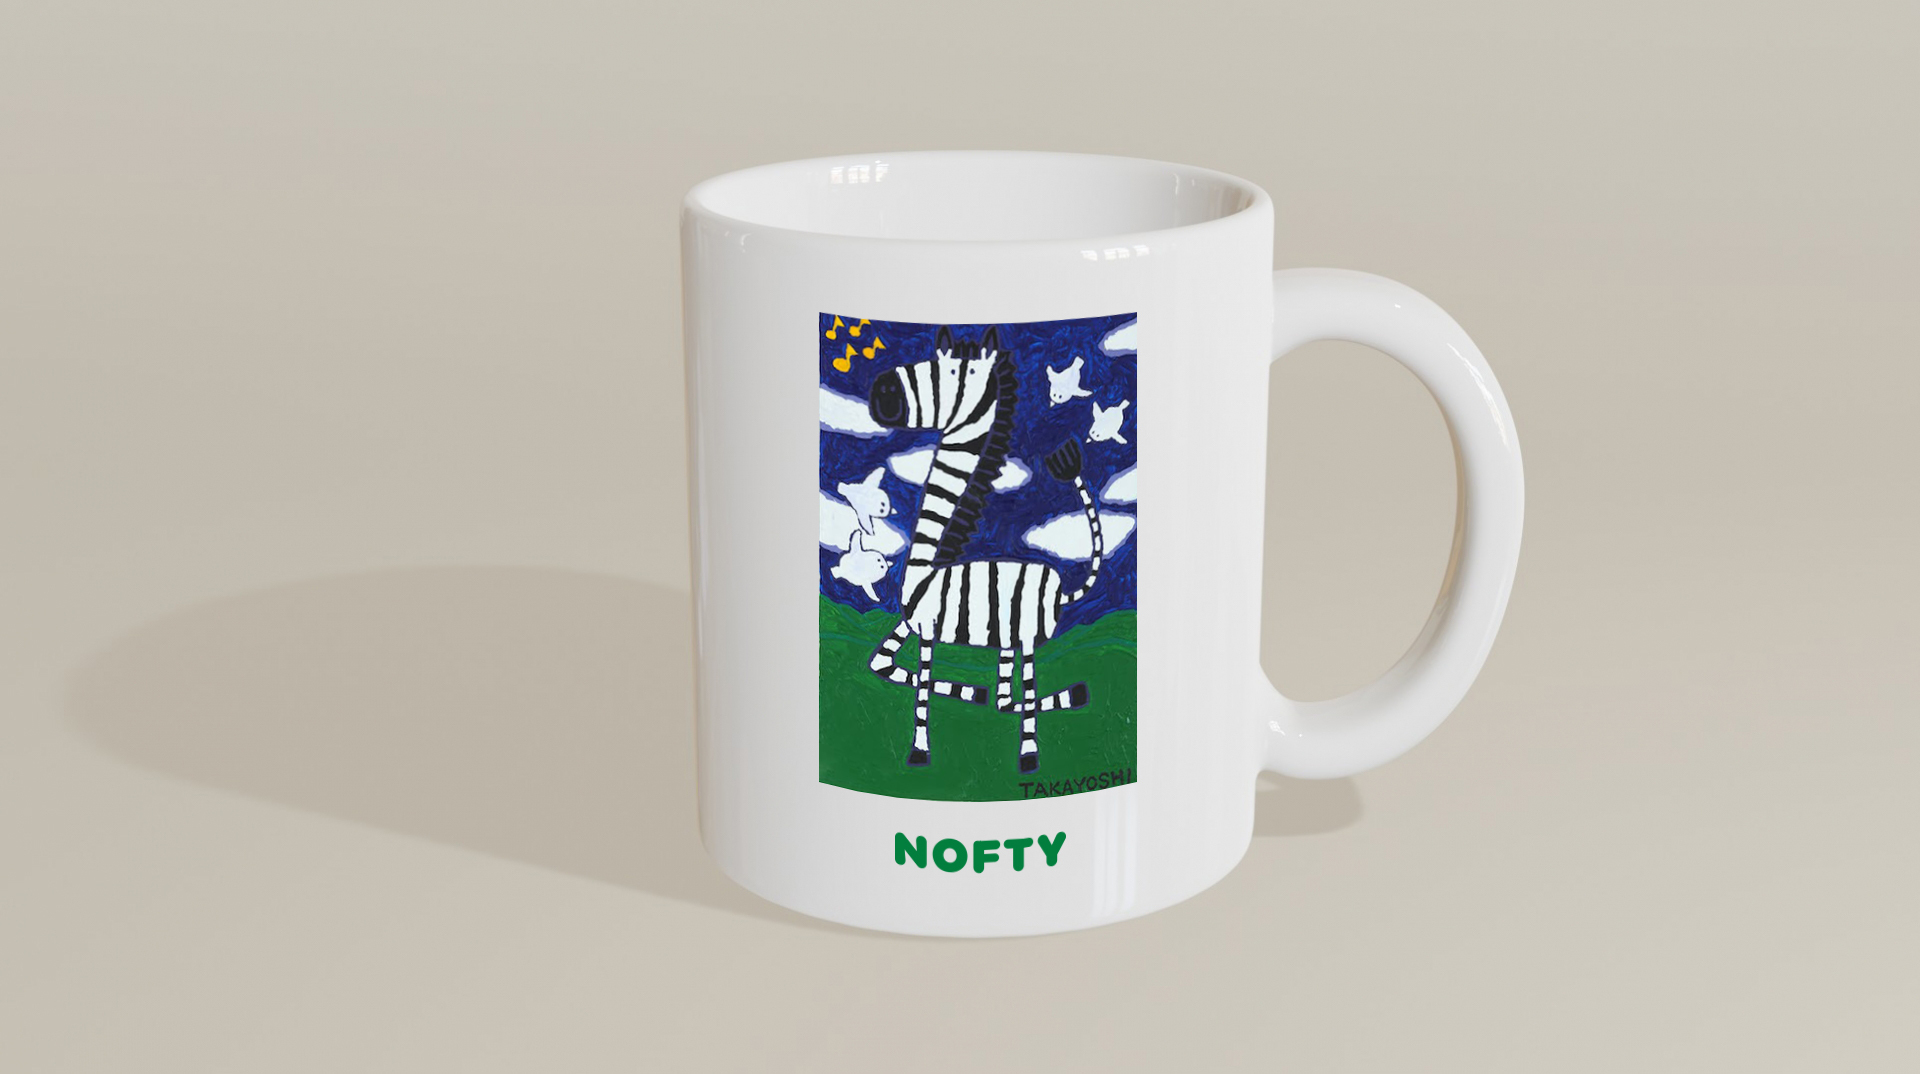 ノベルティ制作サービス『NOFTY』、福祉実験ユニットのヘラルボニーのアートを利用したノベルティを提供開始のサブ画像1_ノベルティの完成イメージ